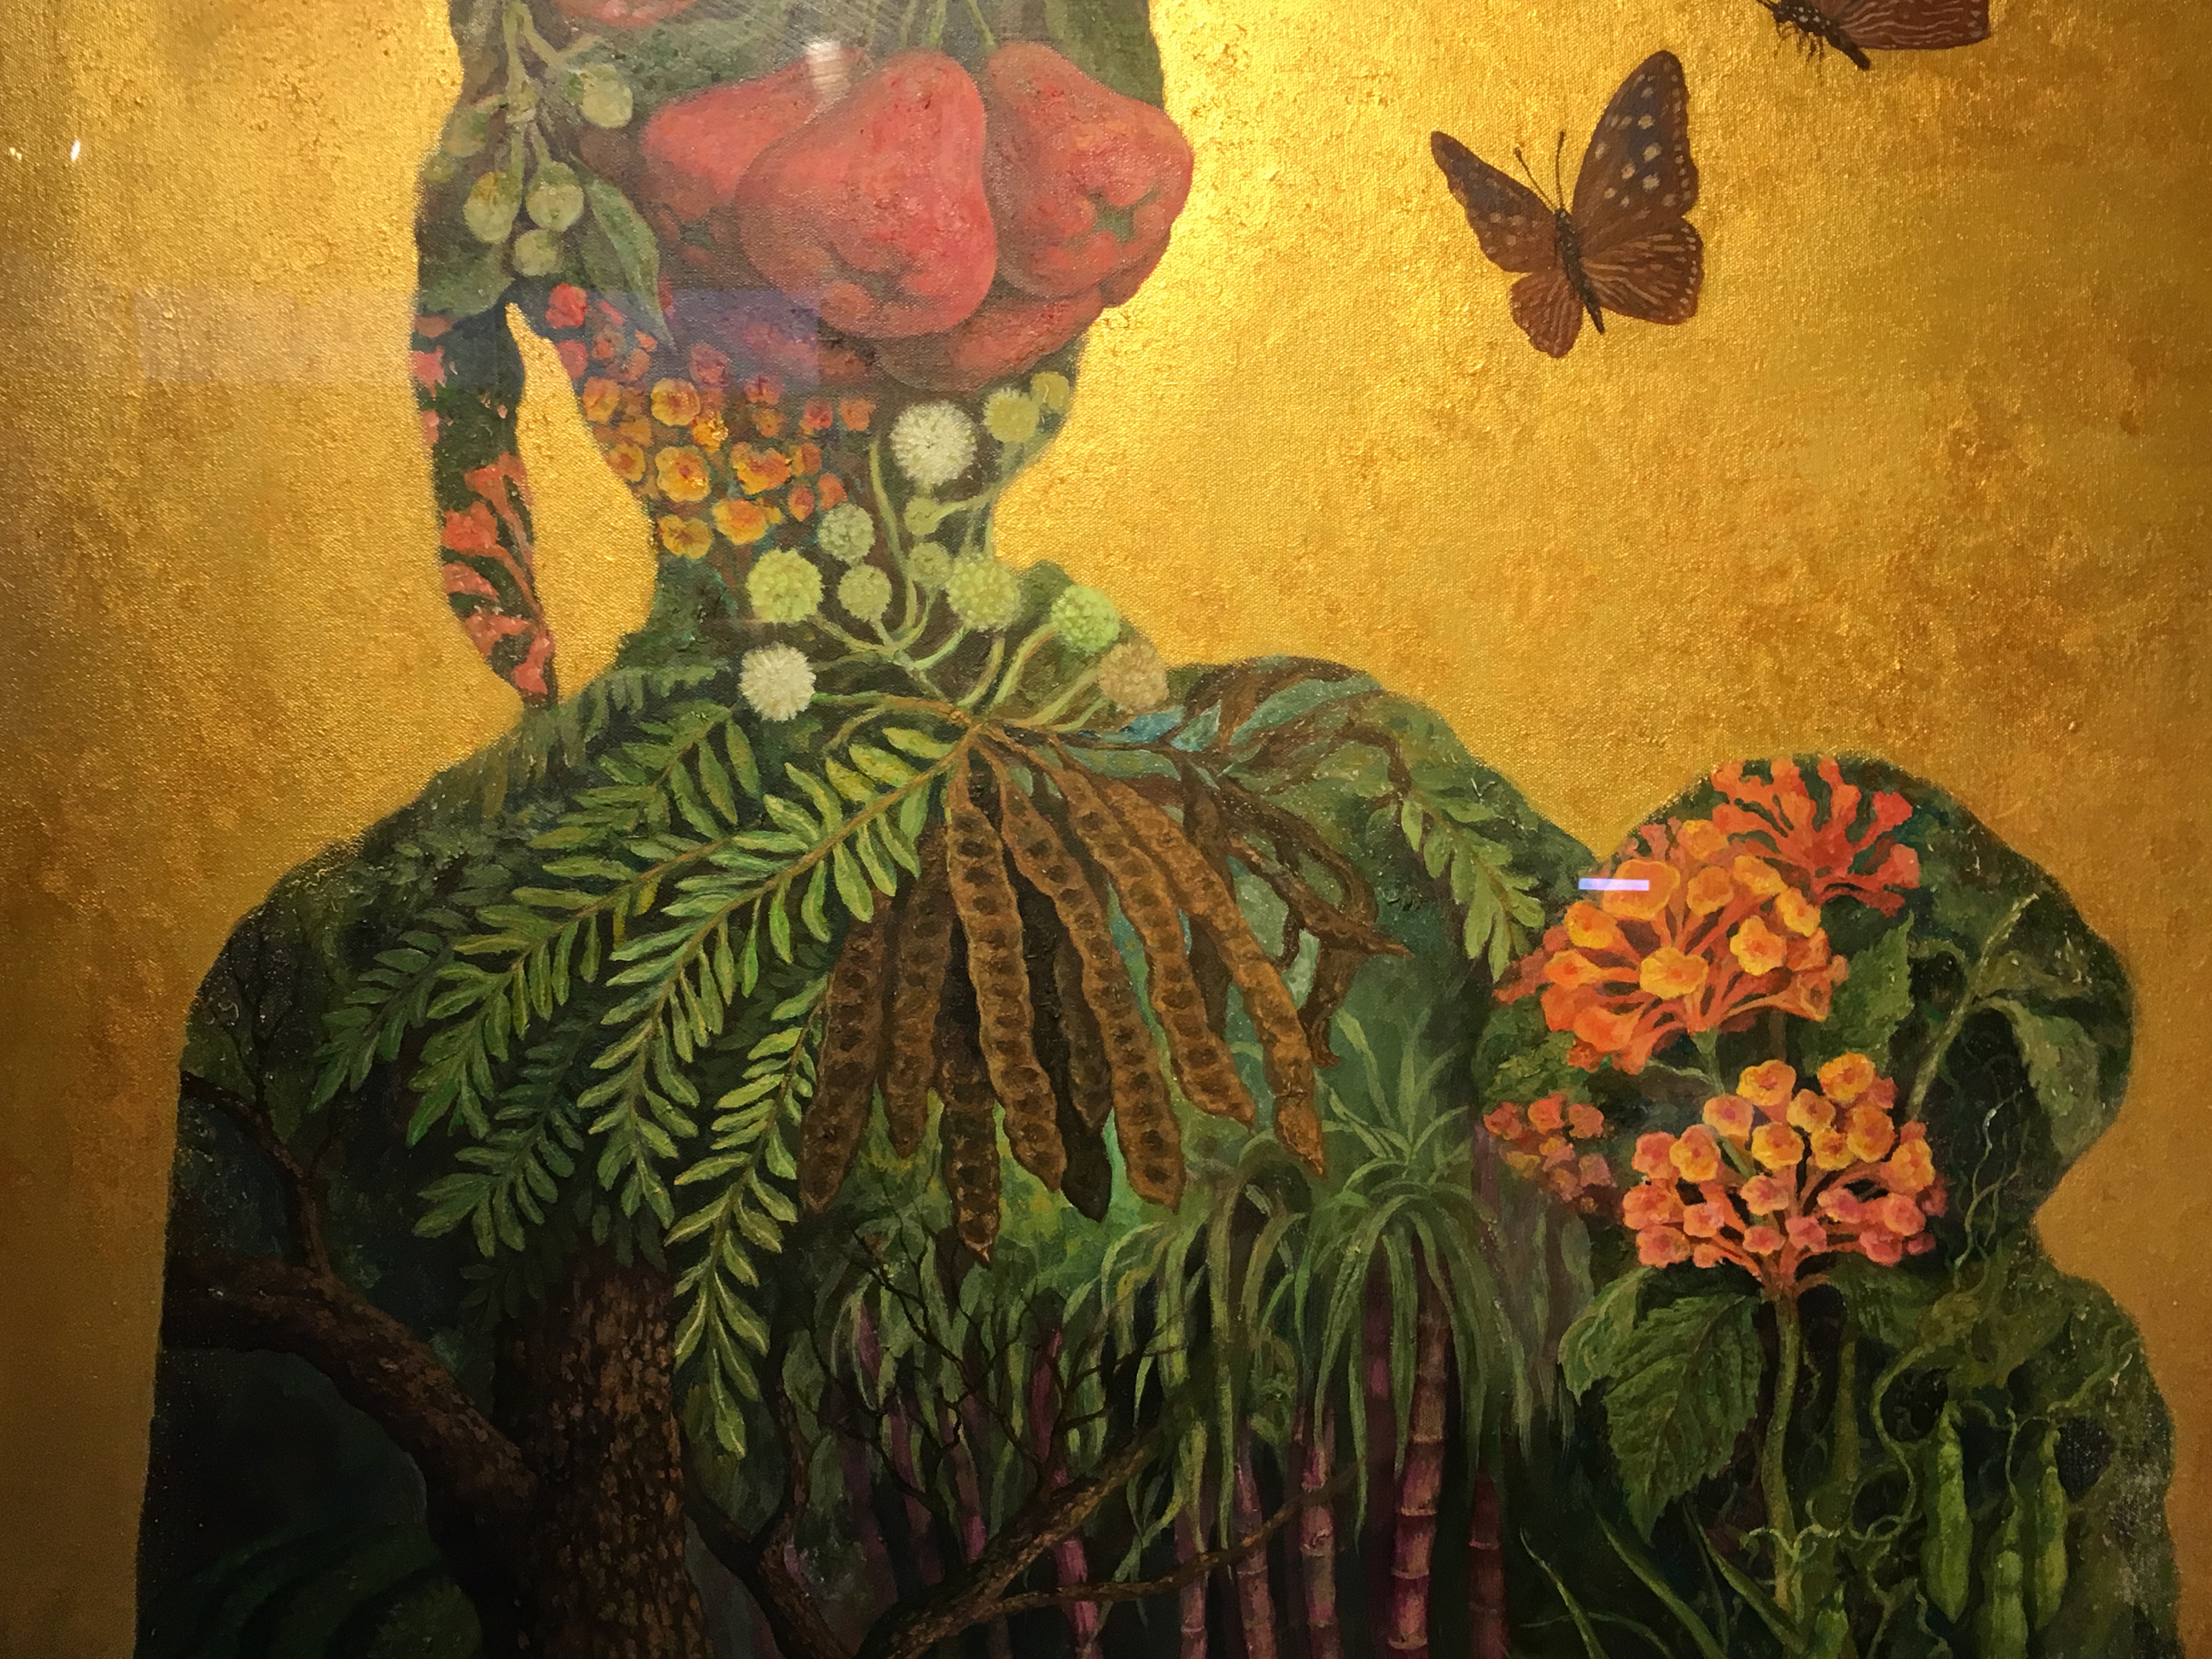 劉子平，《母與子》細節，100 x 80 cm，油彩、壓克力、綜合媒材、畫布，2019。